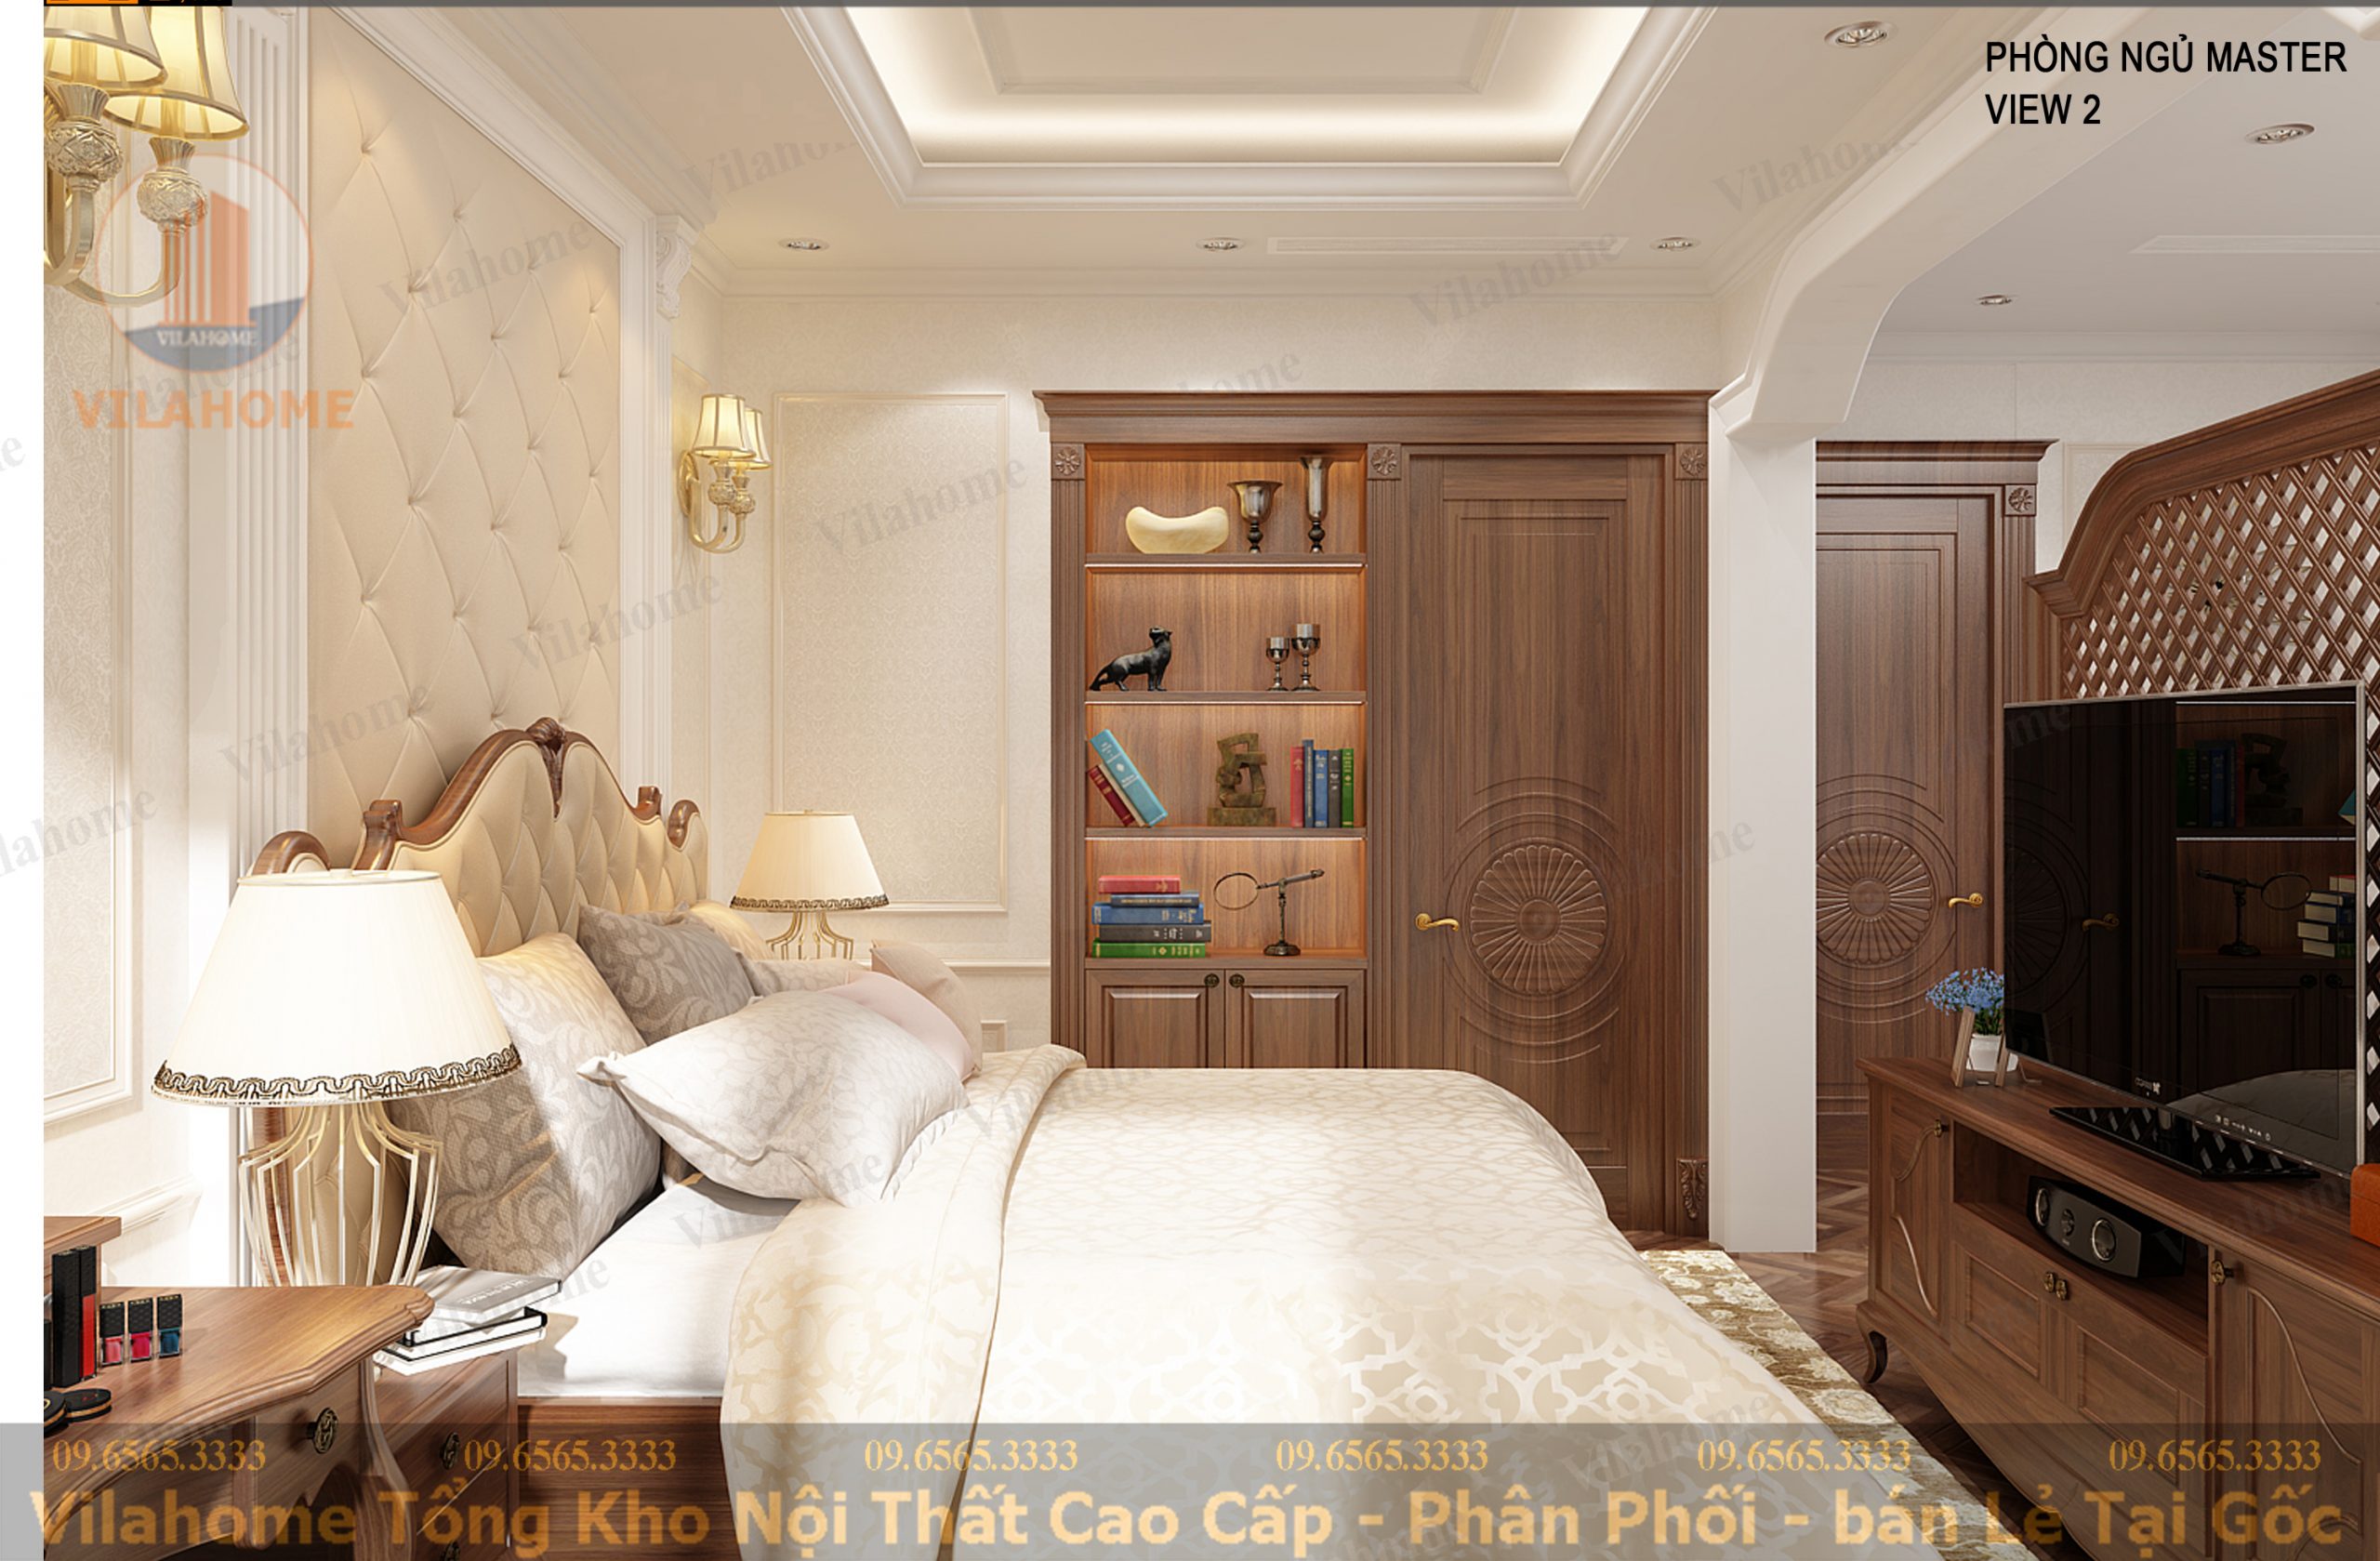 Thiết kế thi công nội thất tân cổ điển mang phong cách châu âu rẻ đẹp, tư vấn nhiệt tình miễn phí